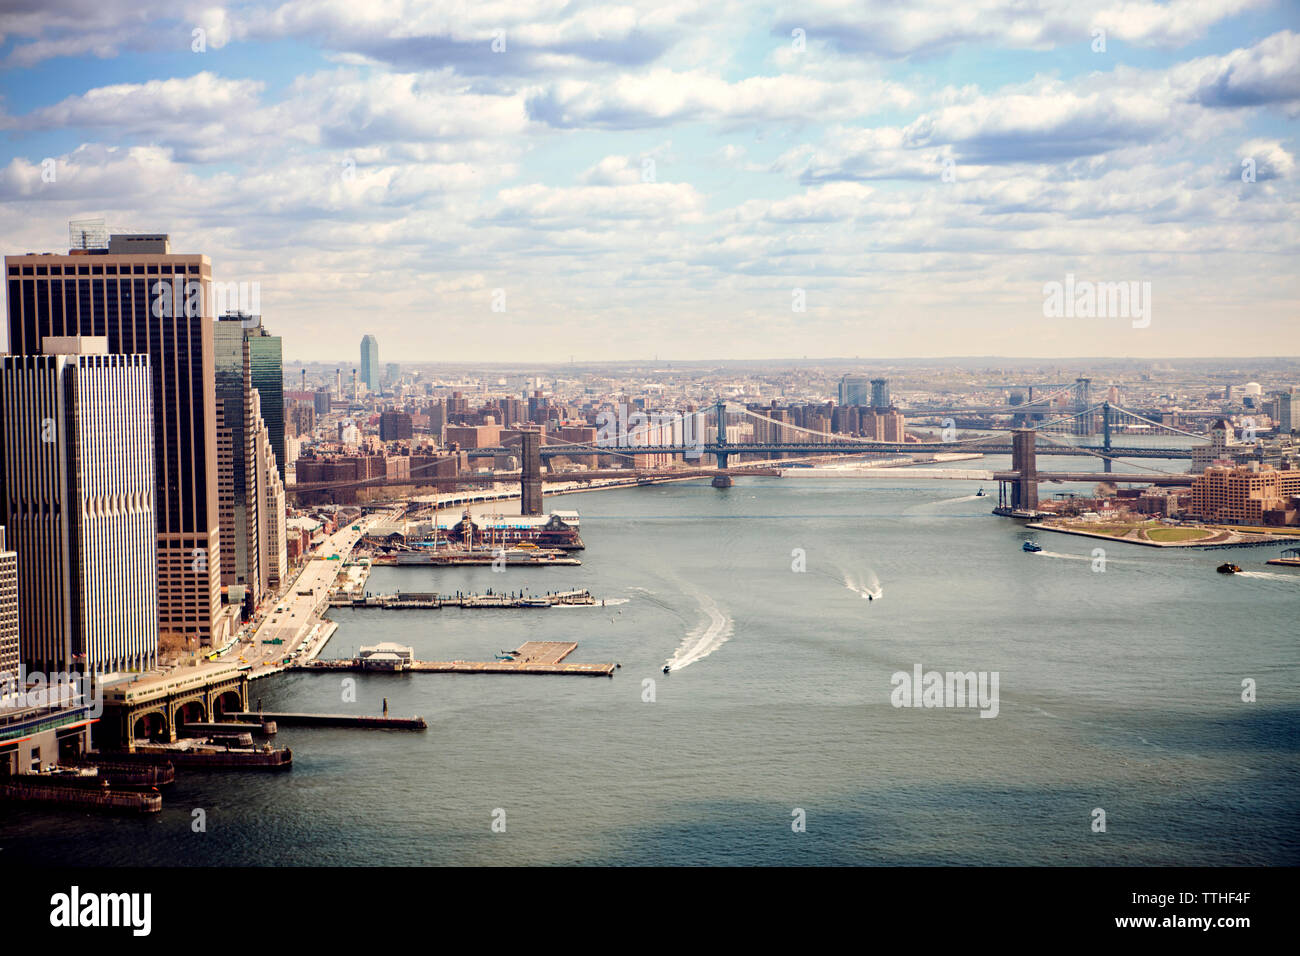 Ponts sur l'East River par cityscape against sky Banque D'Images